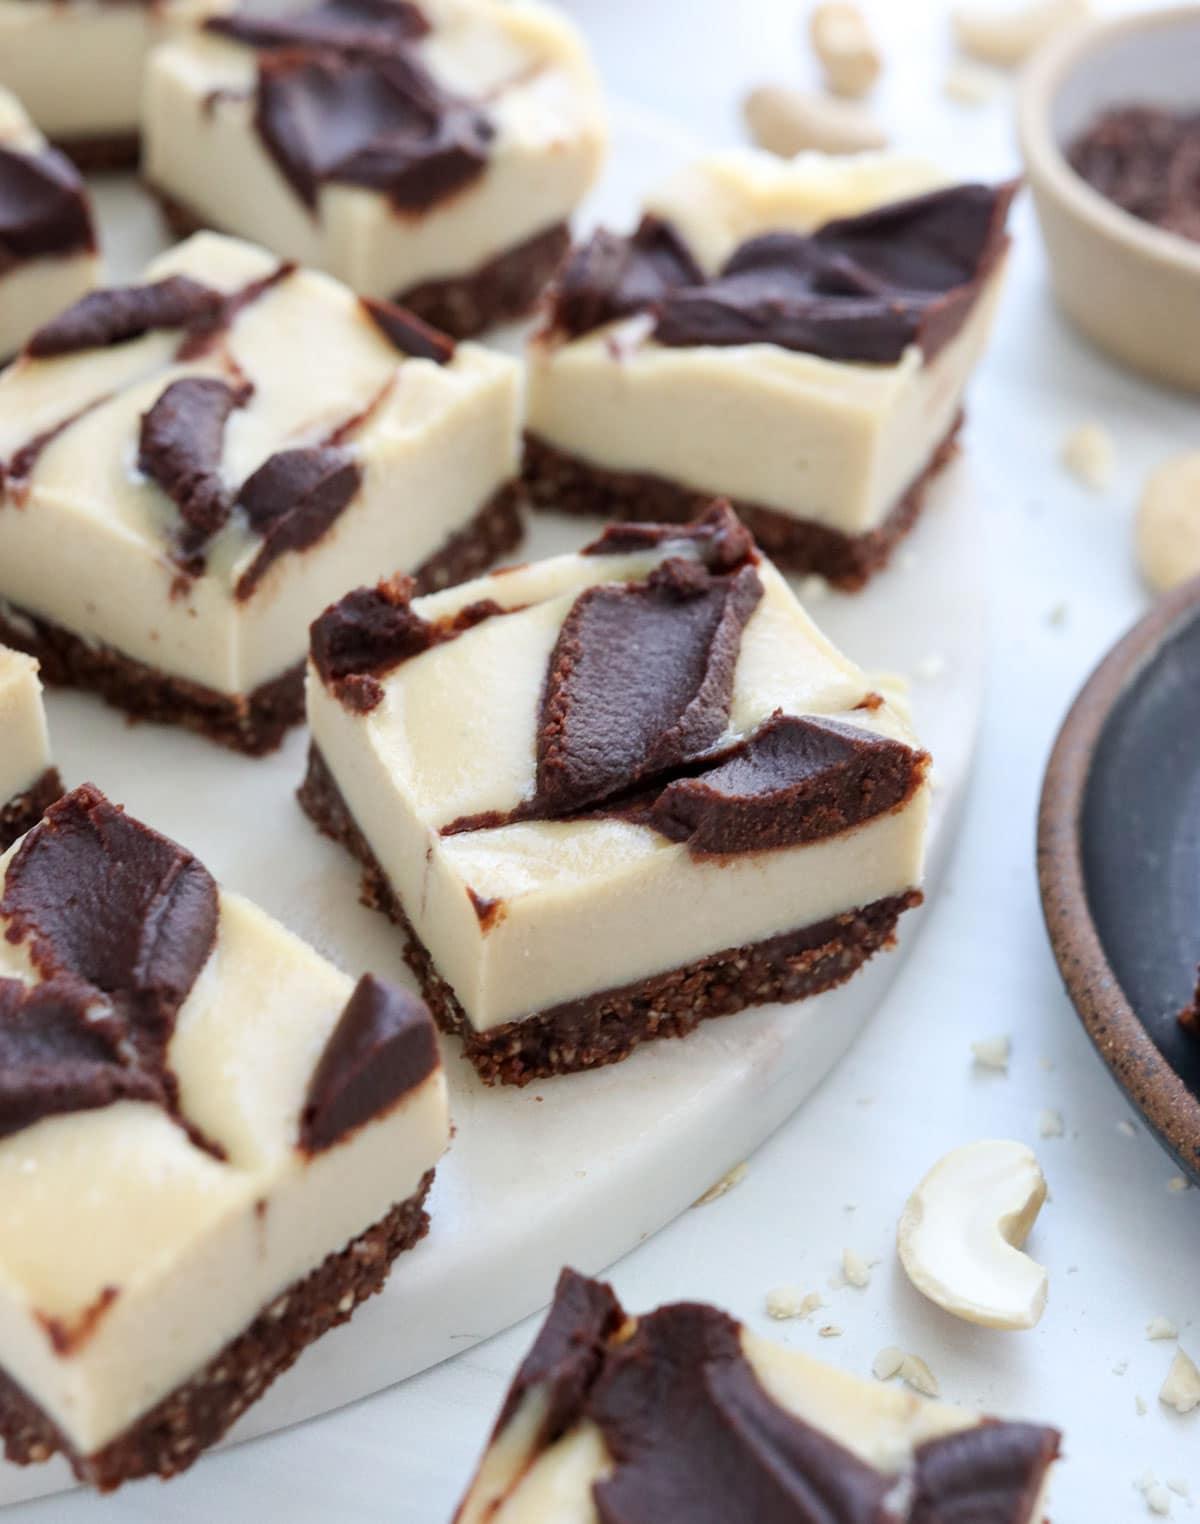 vegan chocolate cheesecake bars on white surface